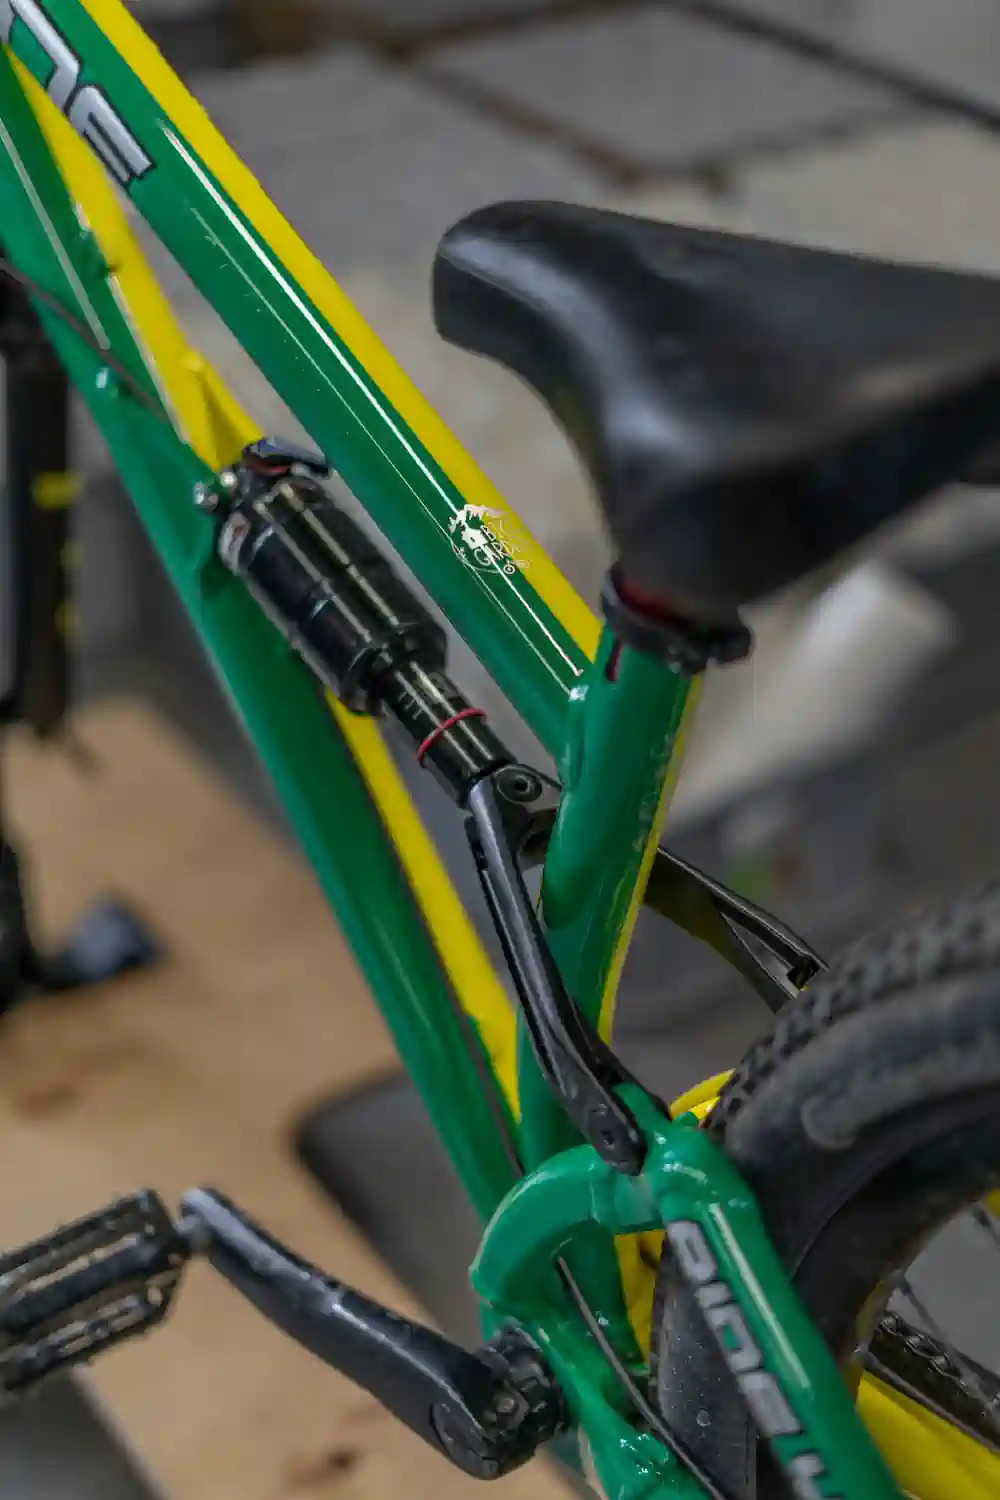 Szczegółowy widok na żółto-zieloną ramę roweru z grafiką i osprzętem